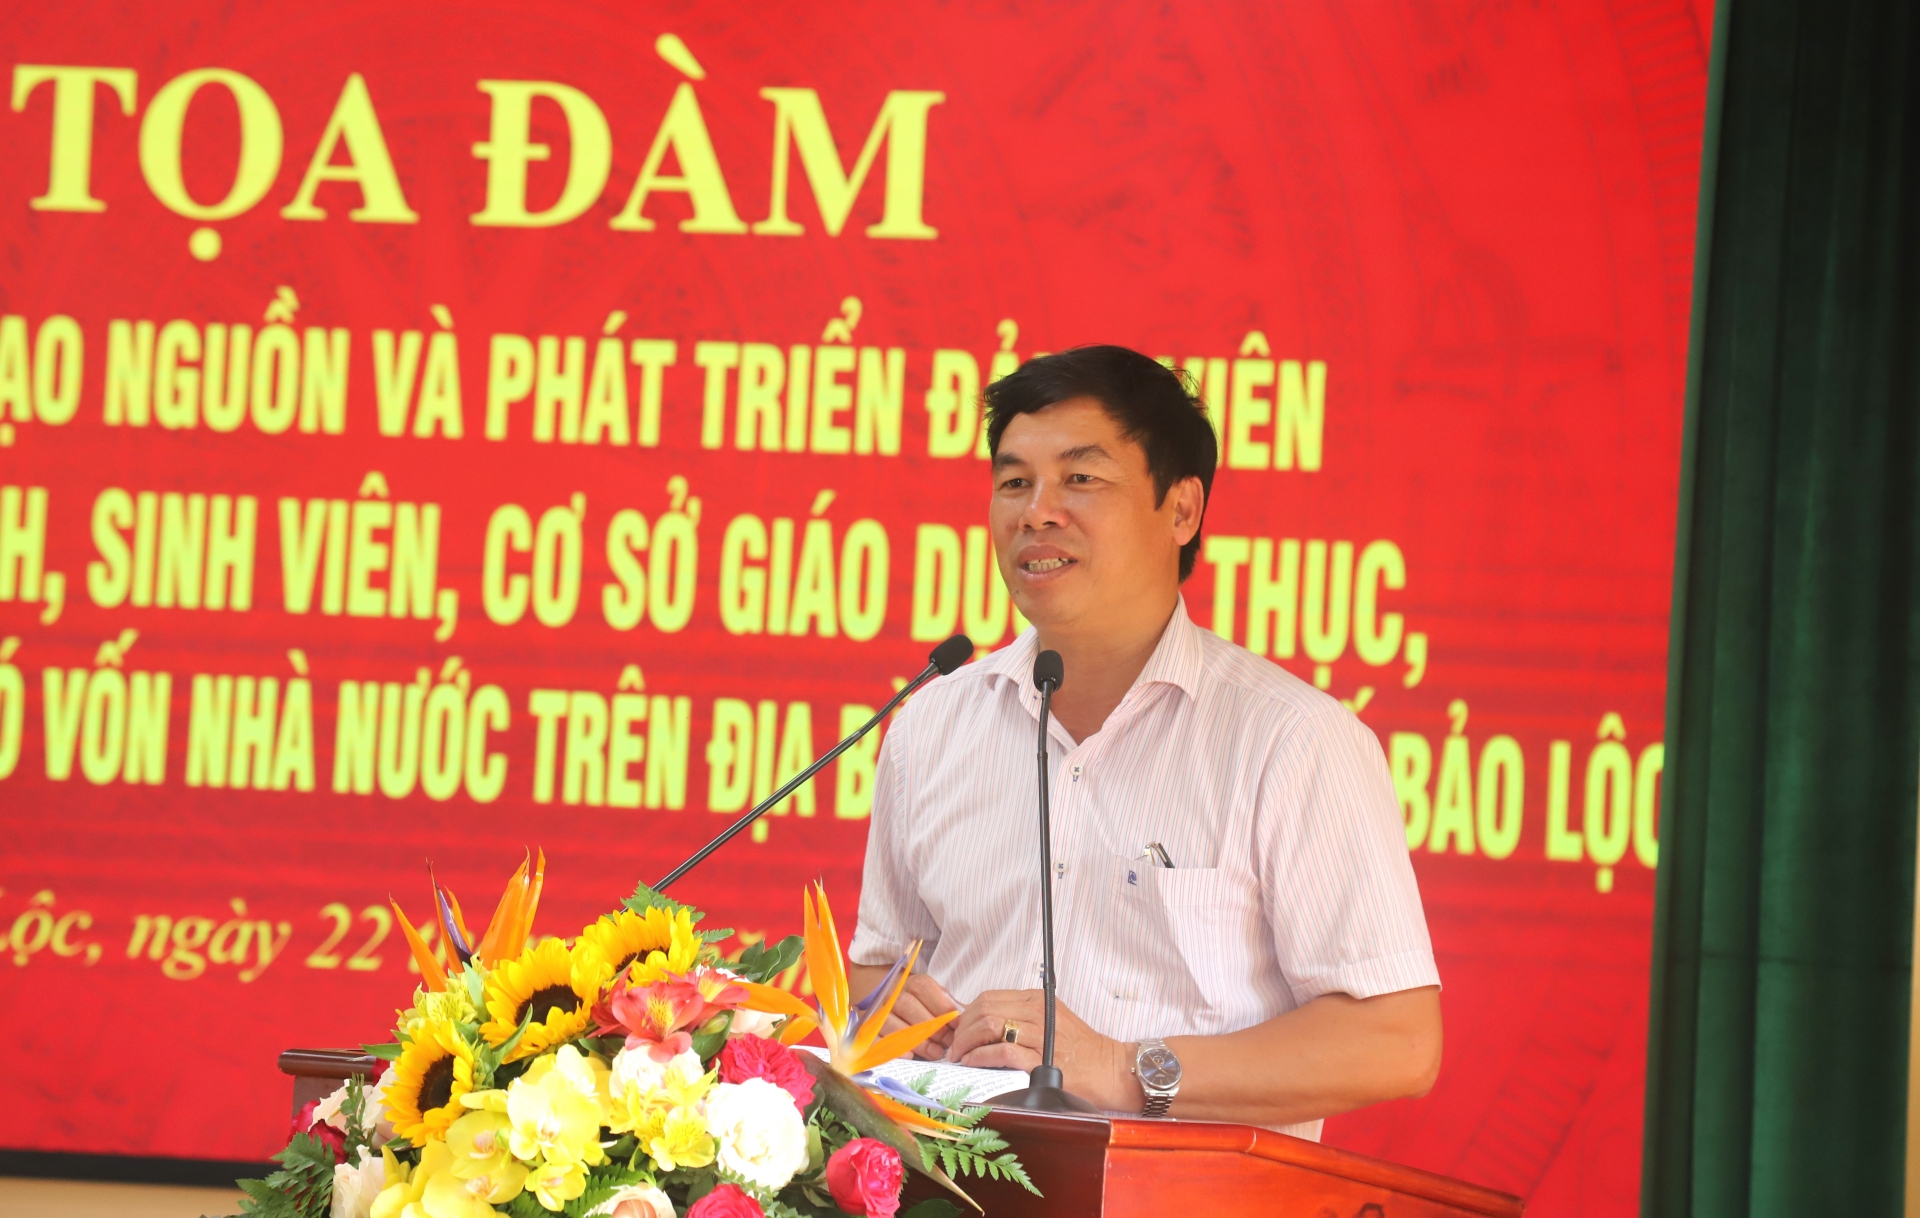 Đồng chí Nghiêm Xuân Đức - Phó Bí thư Thường trực Thành ủy Bảo Lộc, Chủ tịch HĐND thành phố phát biểu kết luận tại buổi tọa đàm